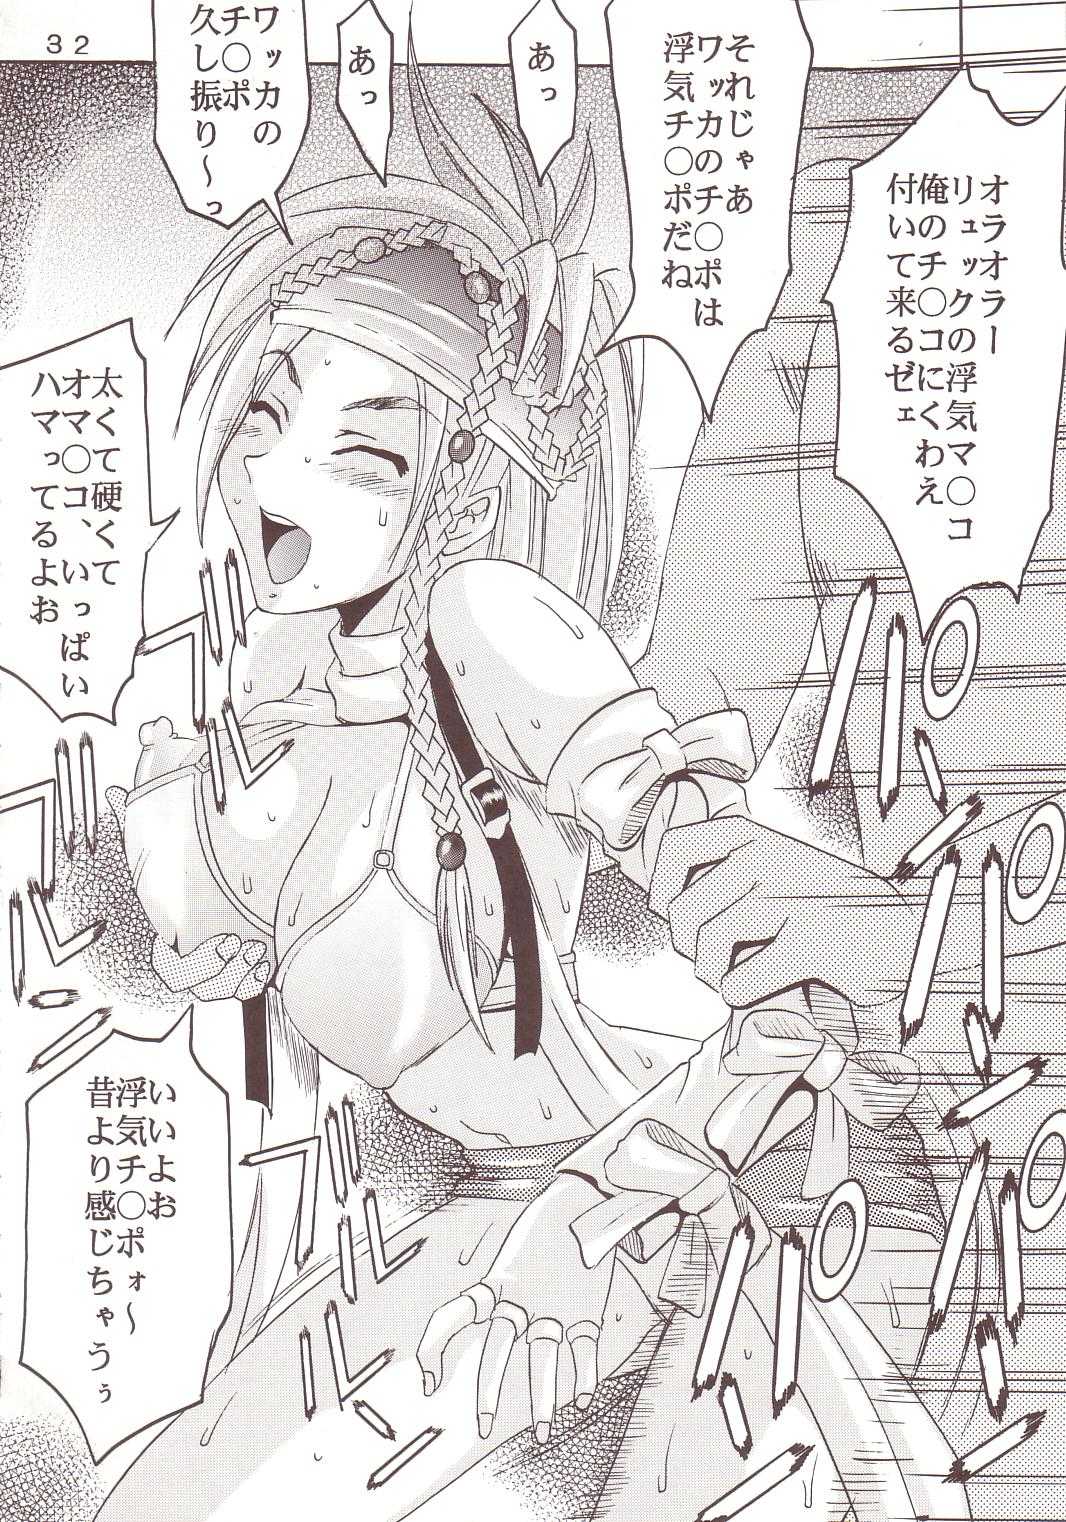 [St. Rio] Yuna A La Mode 08 (Final Fantasy 10-2) 